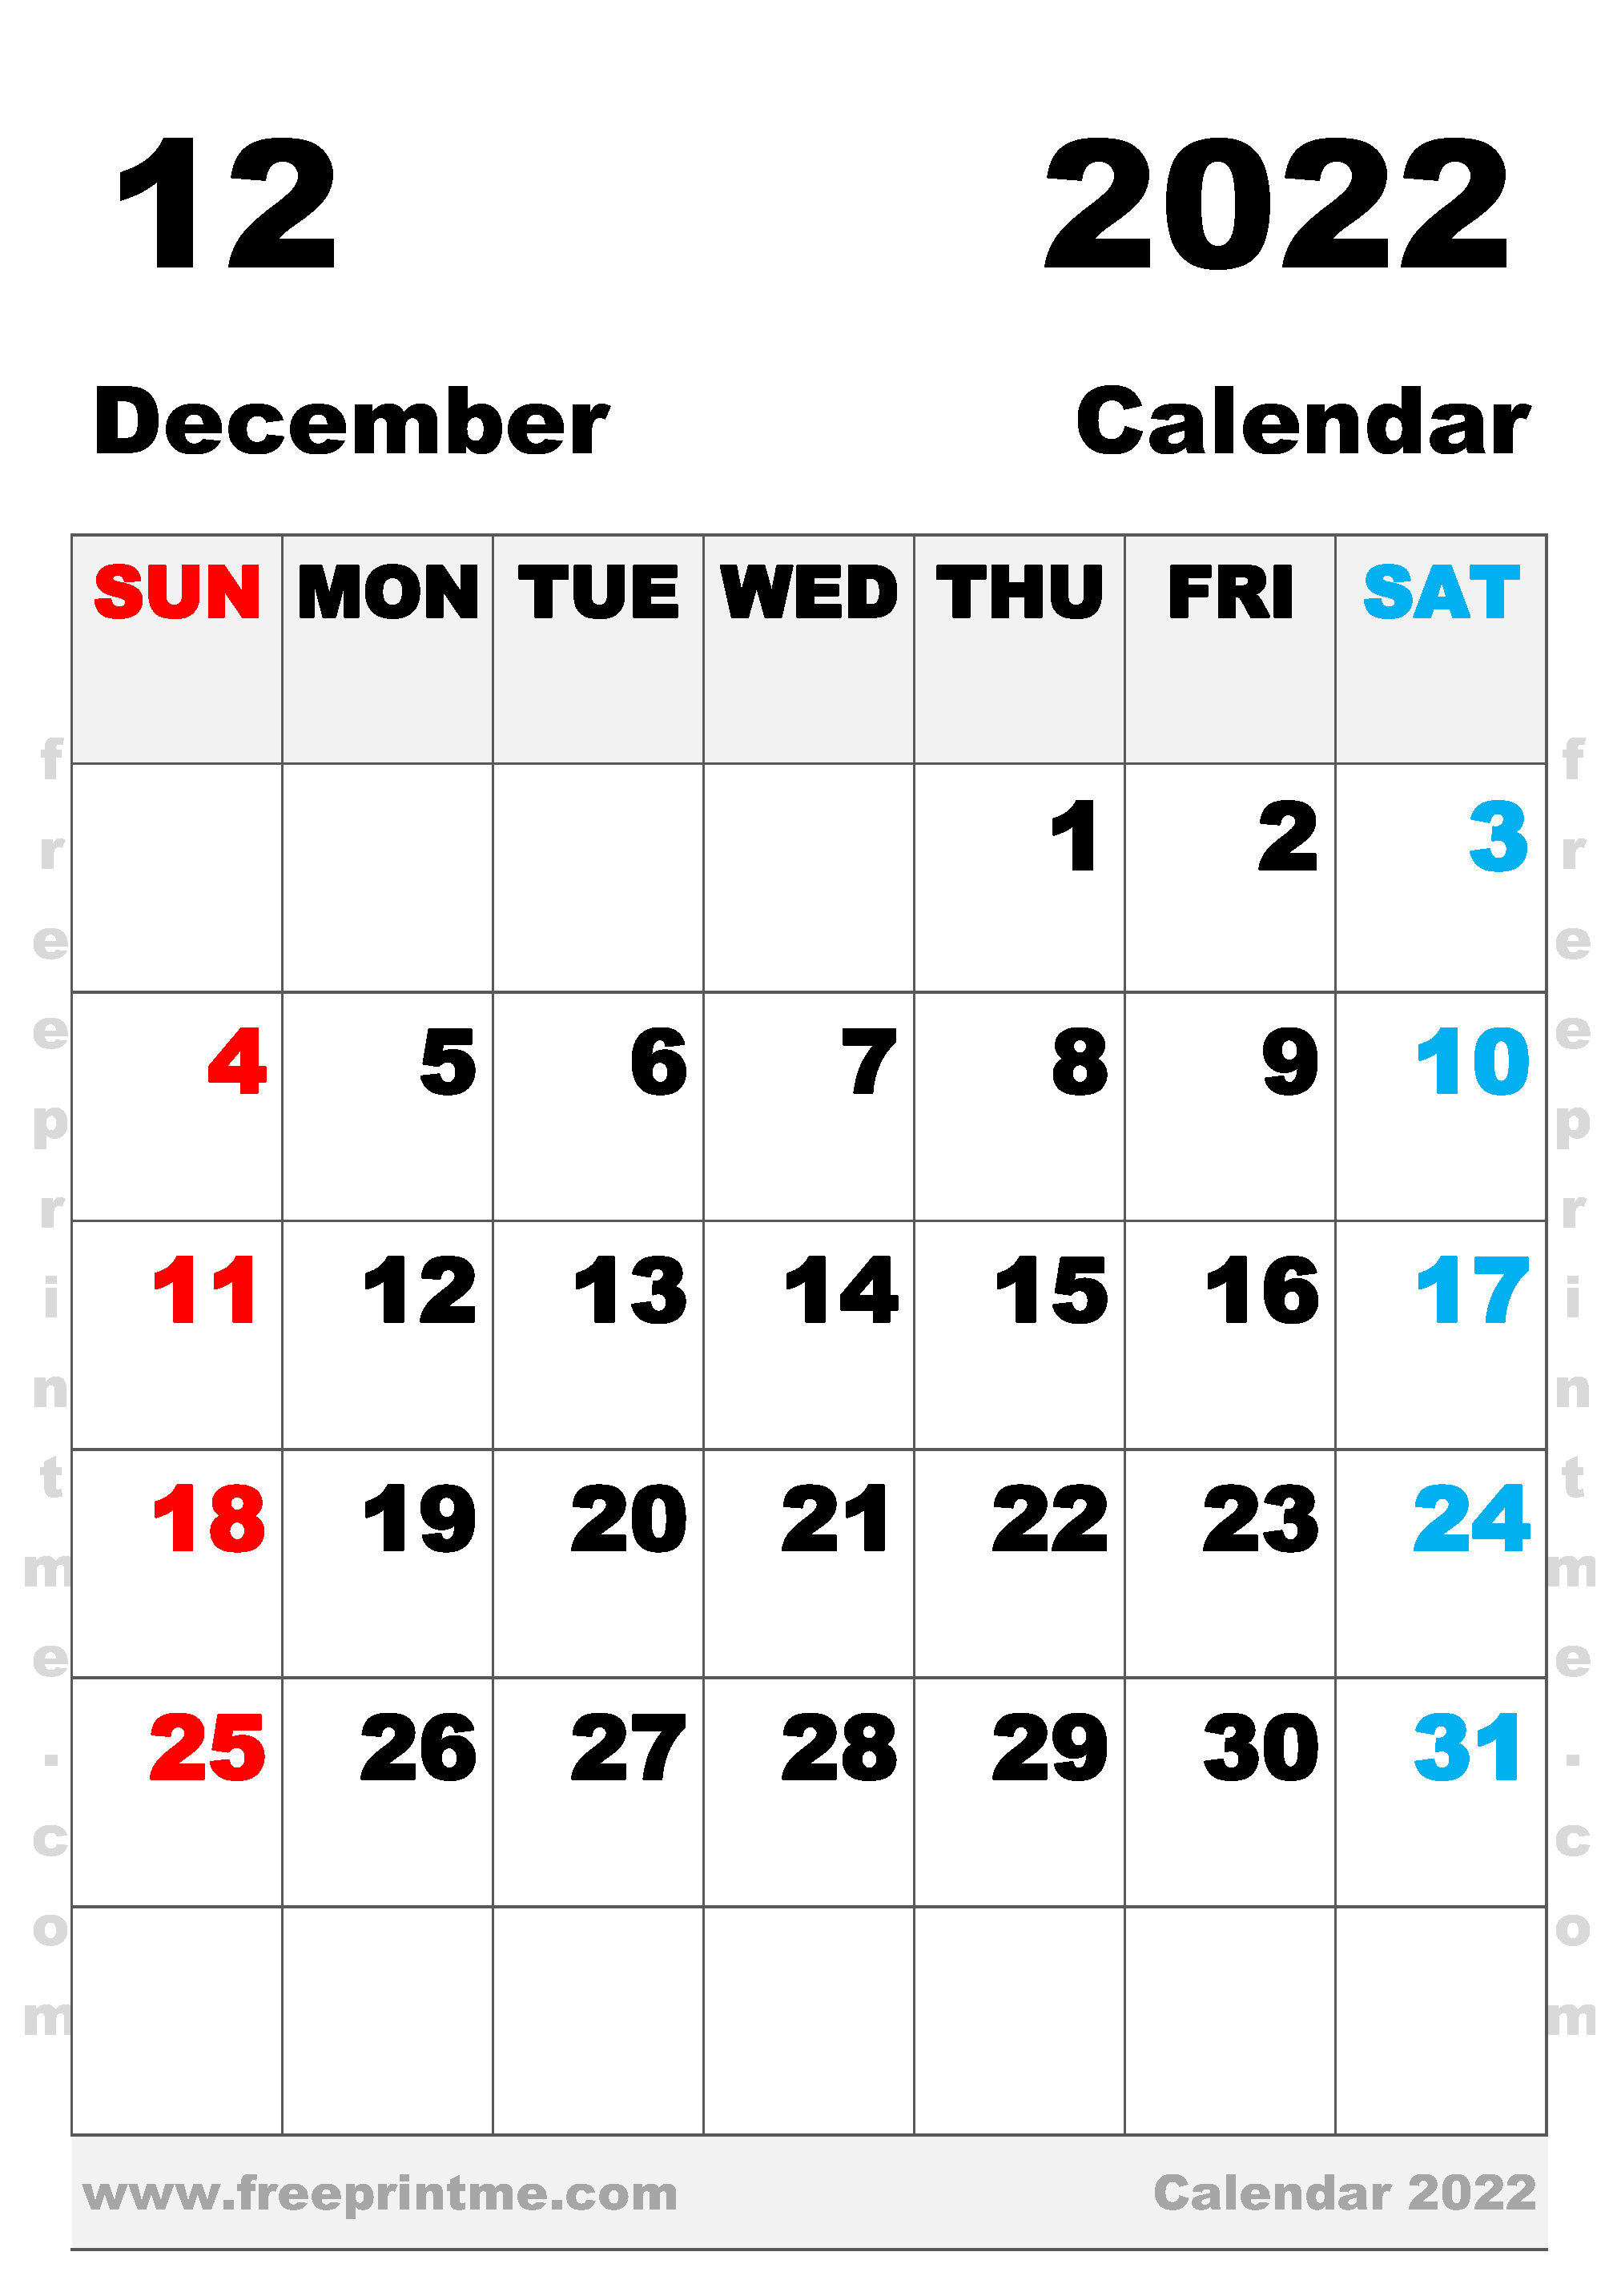 Free Printable December 2022 Calendar B4